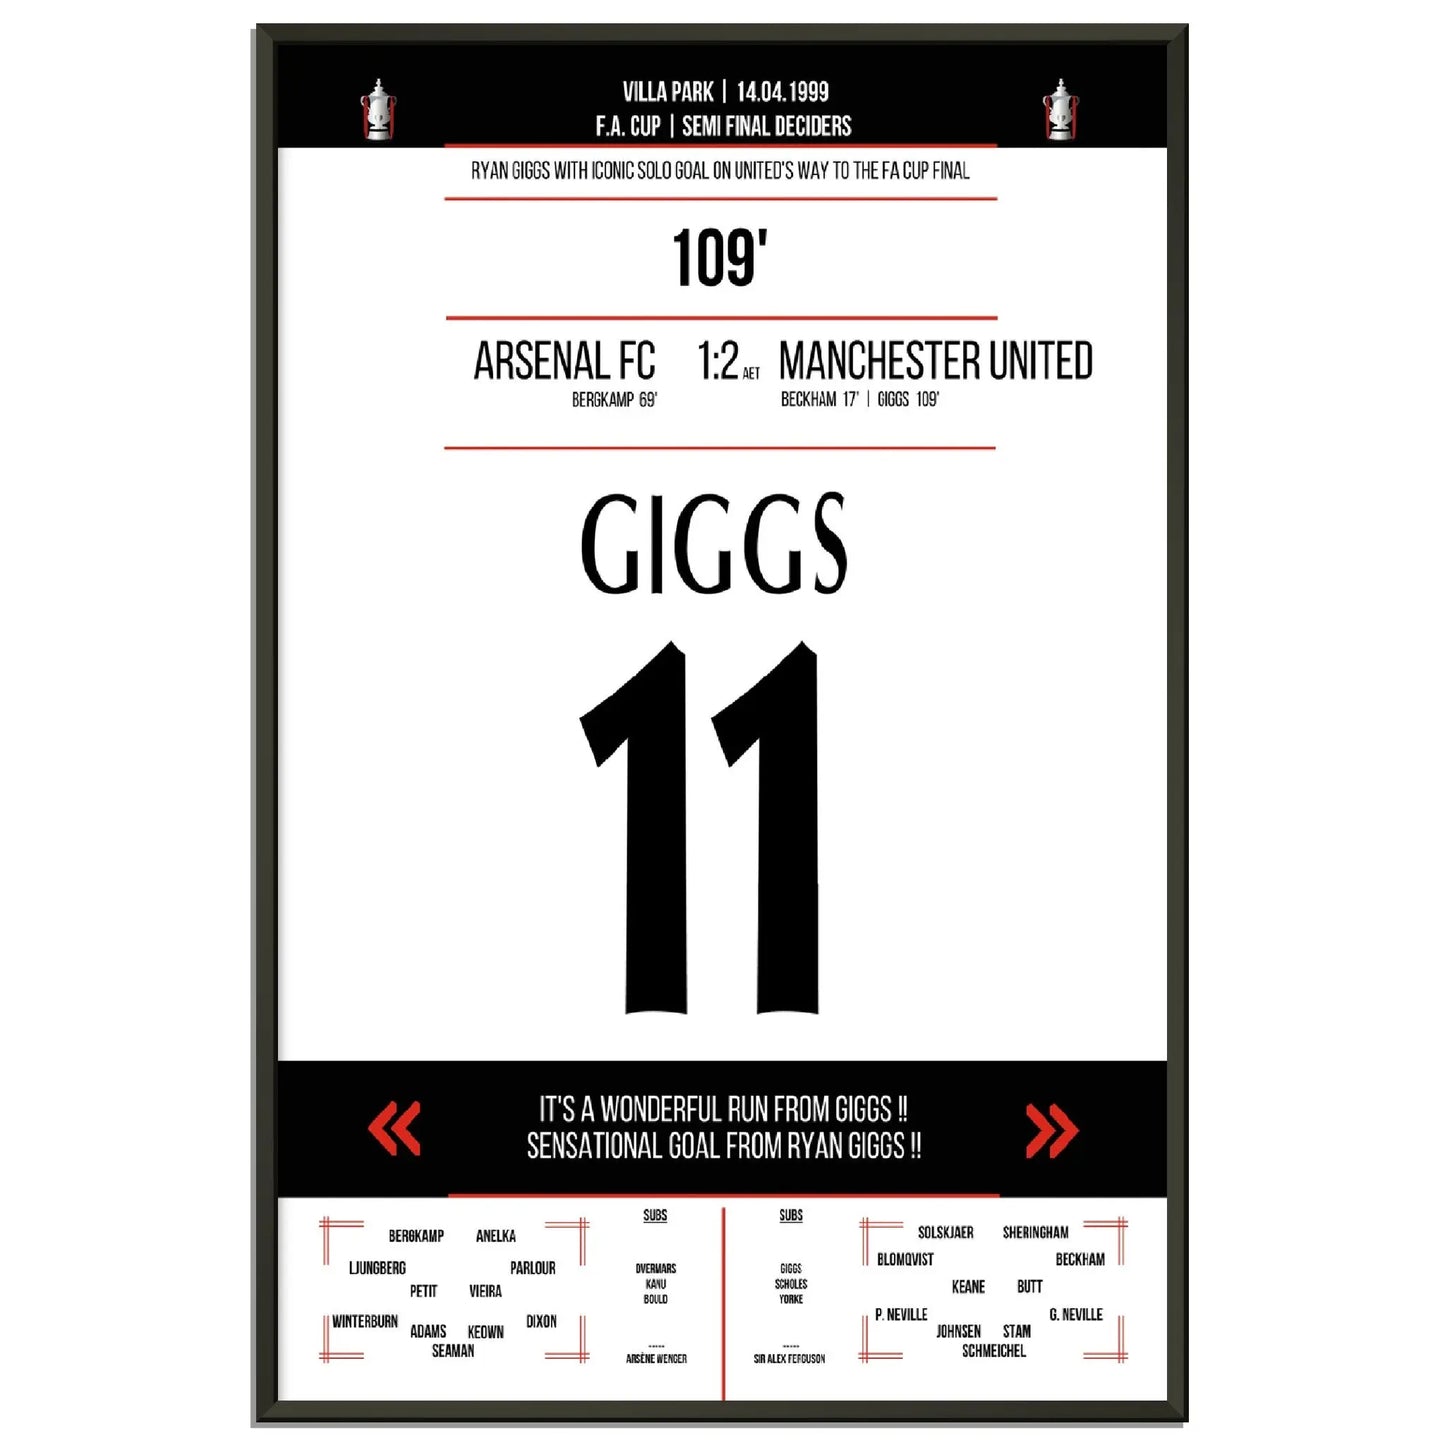 Ryan Giggs legendäres Tor im FA Cup Halbfinal-Triumph gegen Arsenal in 1999 